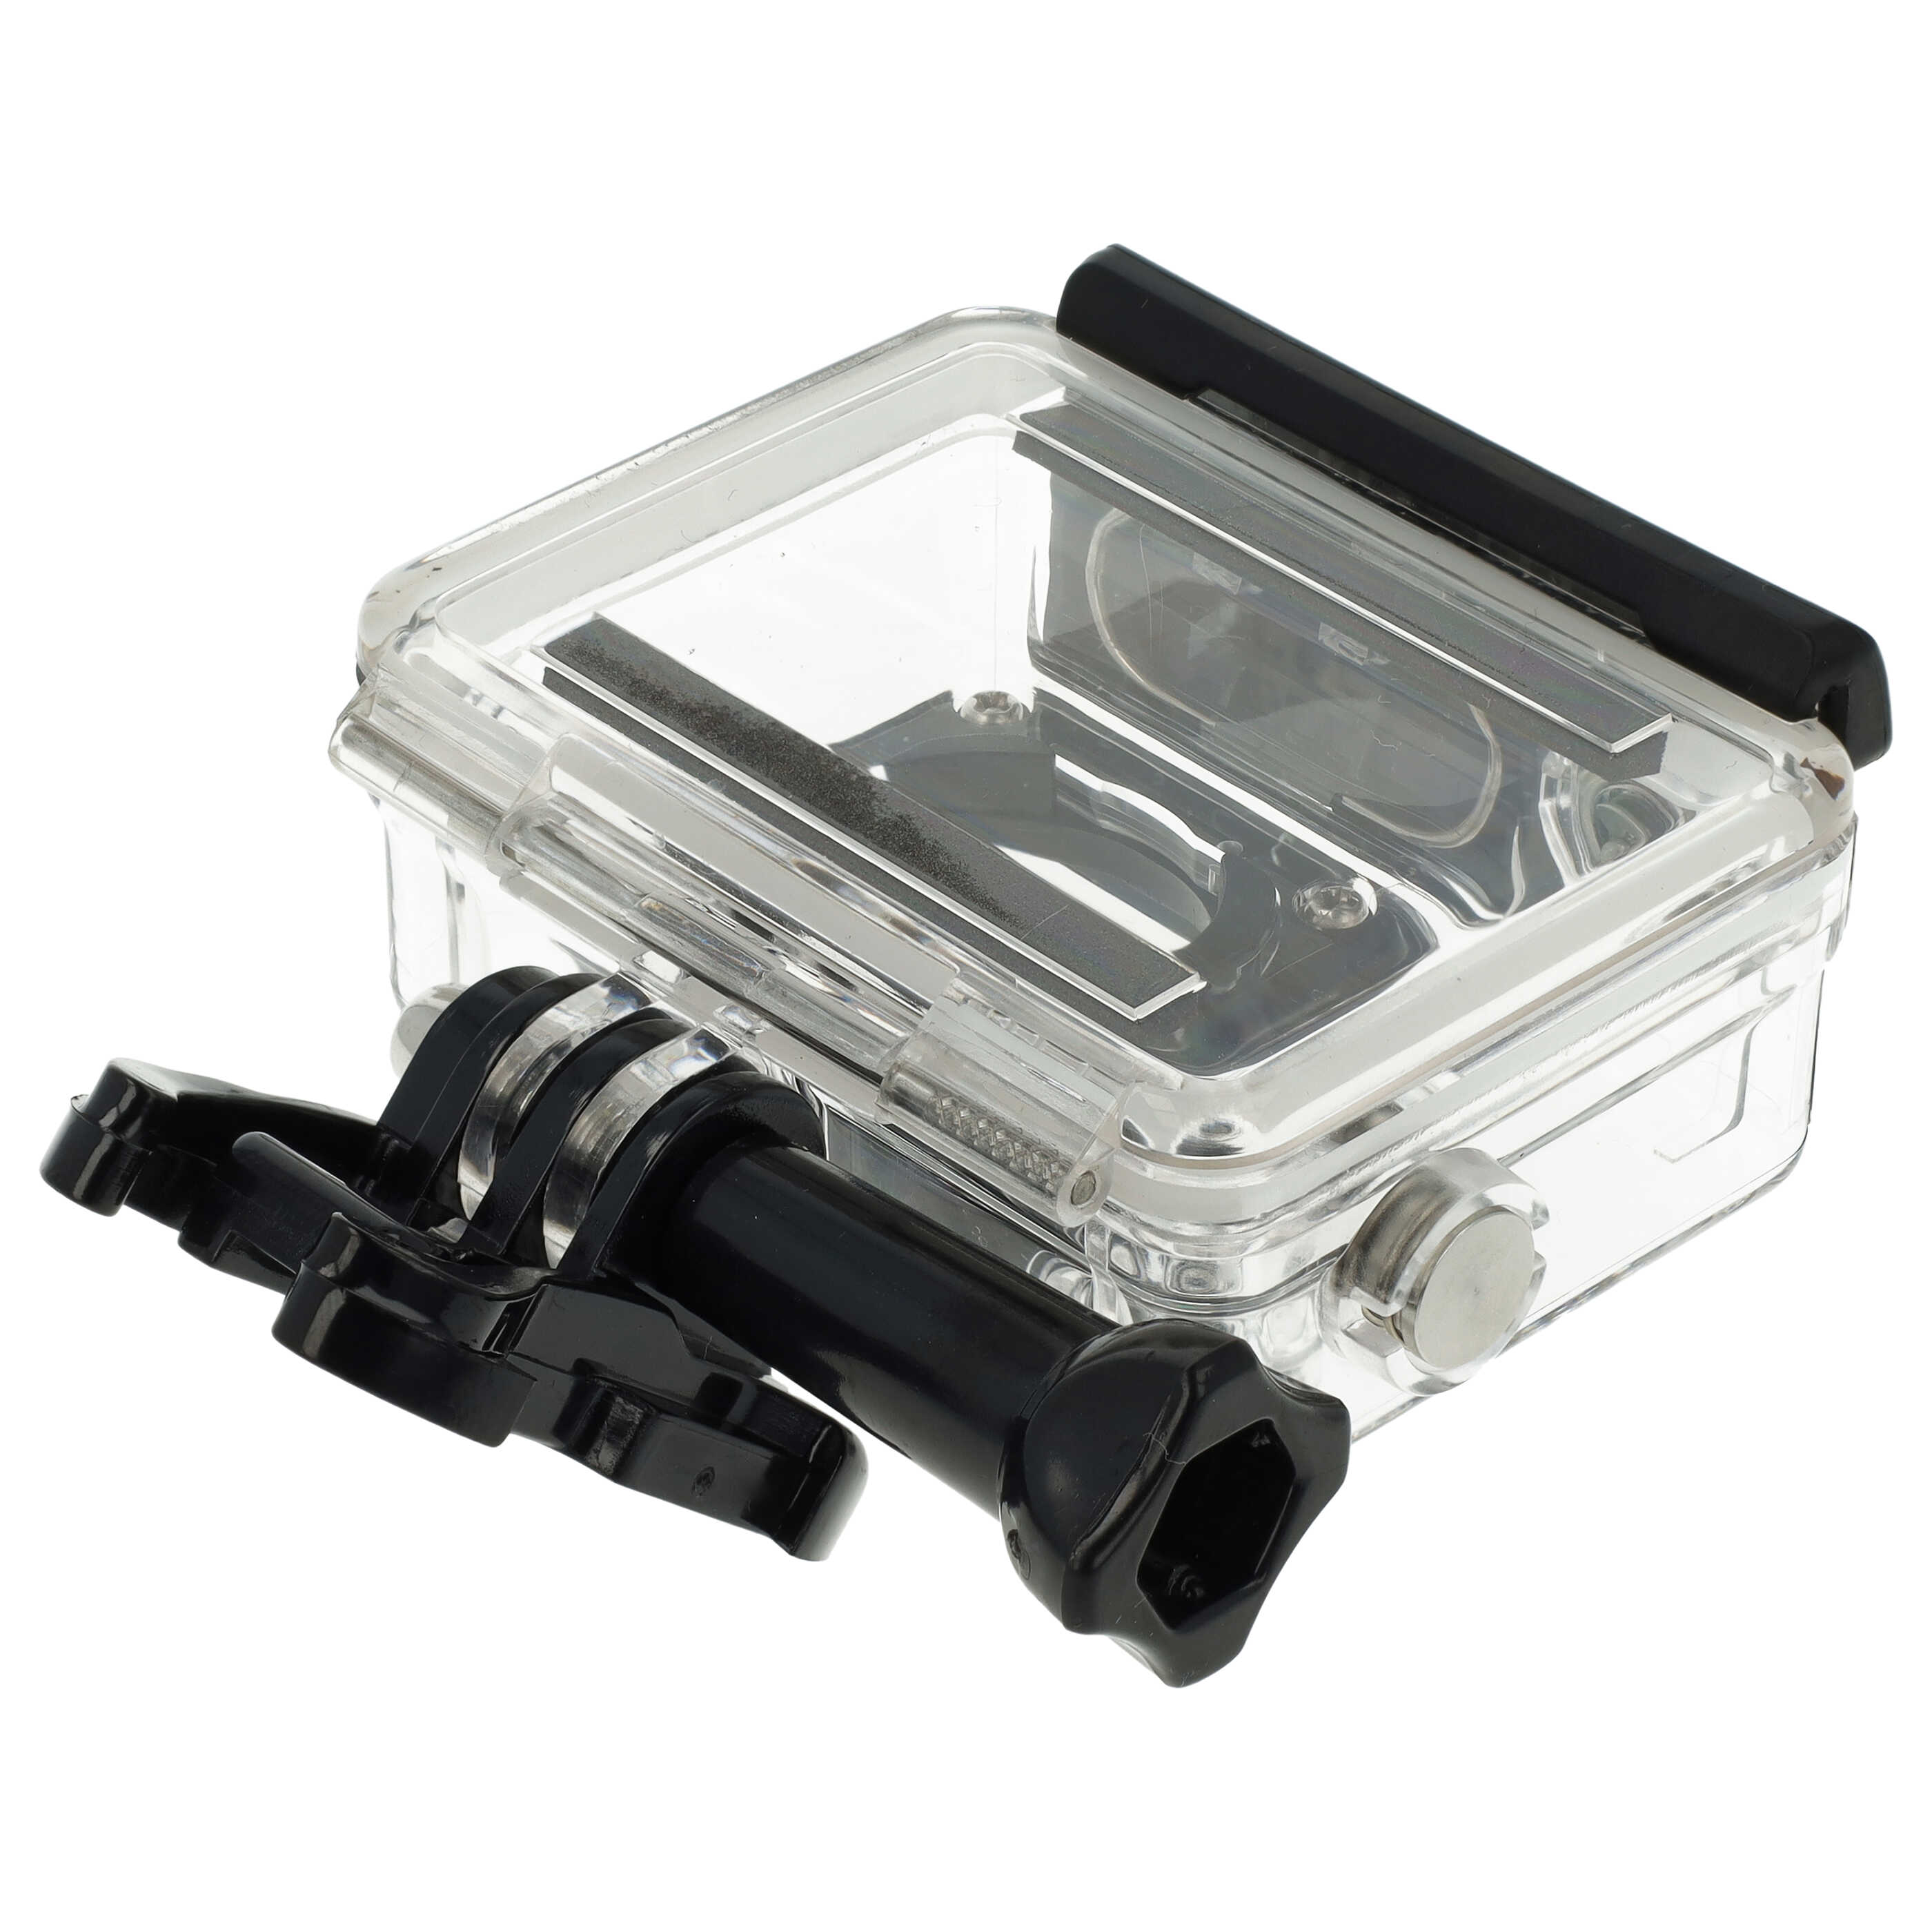 Boîtier étanche pour action cam GoPro Hero 3, 3+, 4 - profondeur max. 45 m